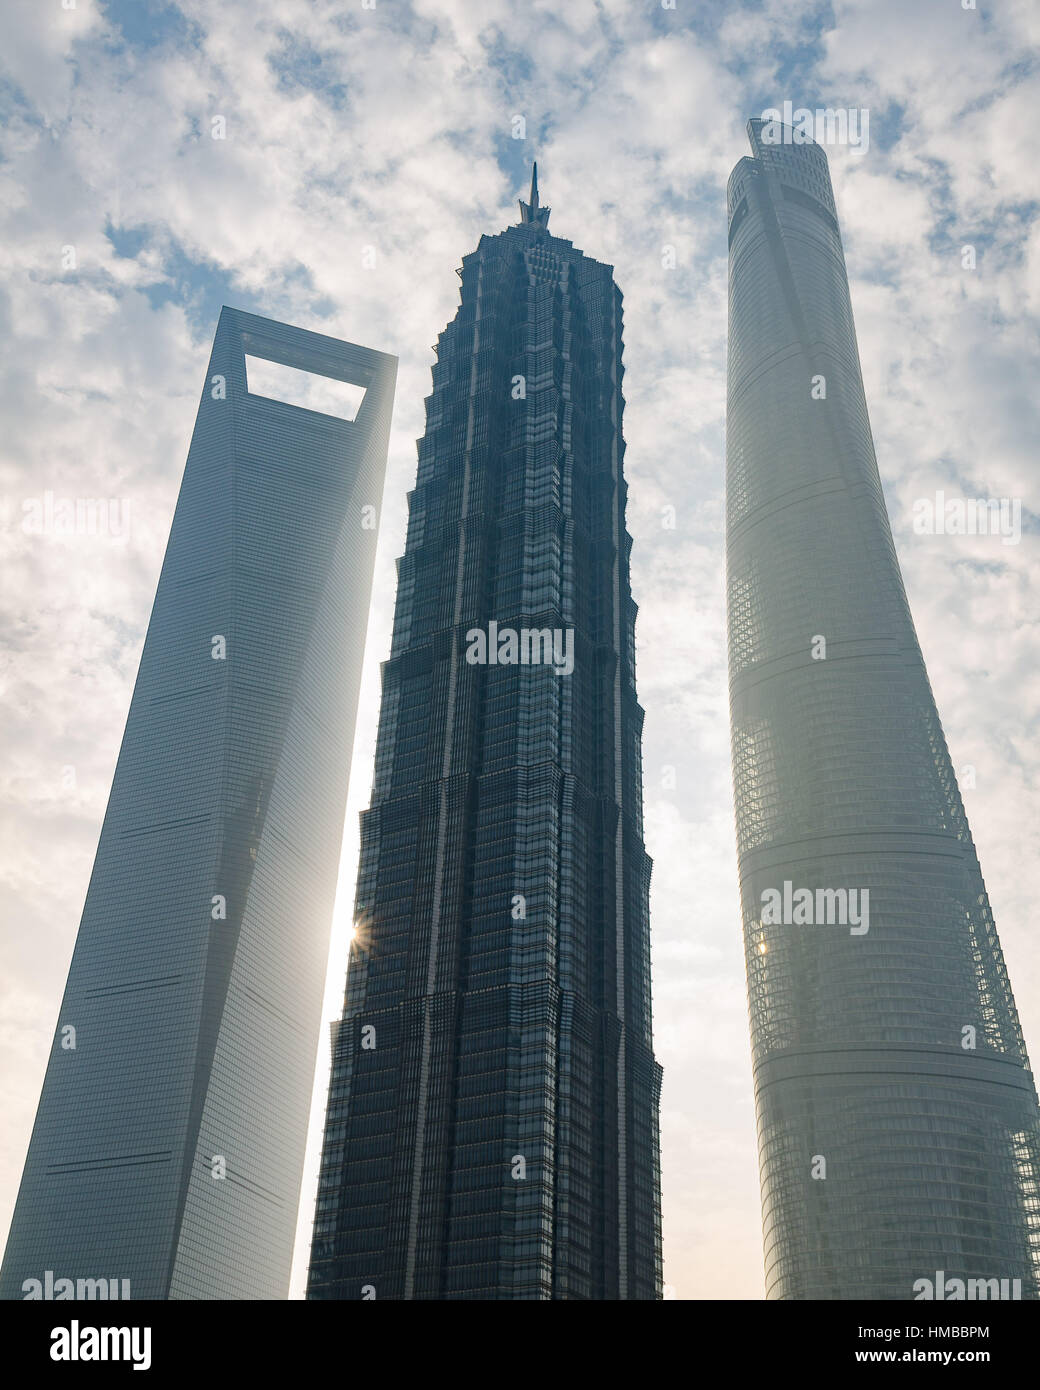 Höchste Gebäude Shanghais - Bankenviertel Skyline Stadtbild Stockfoto